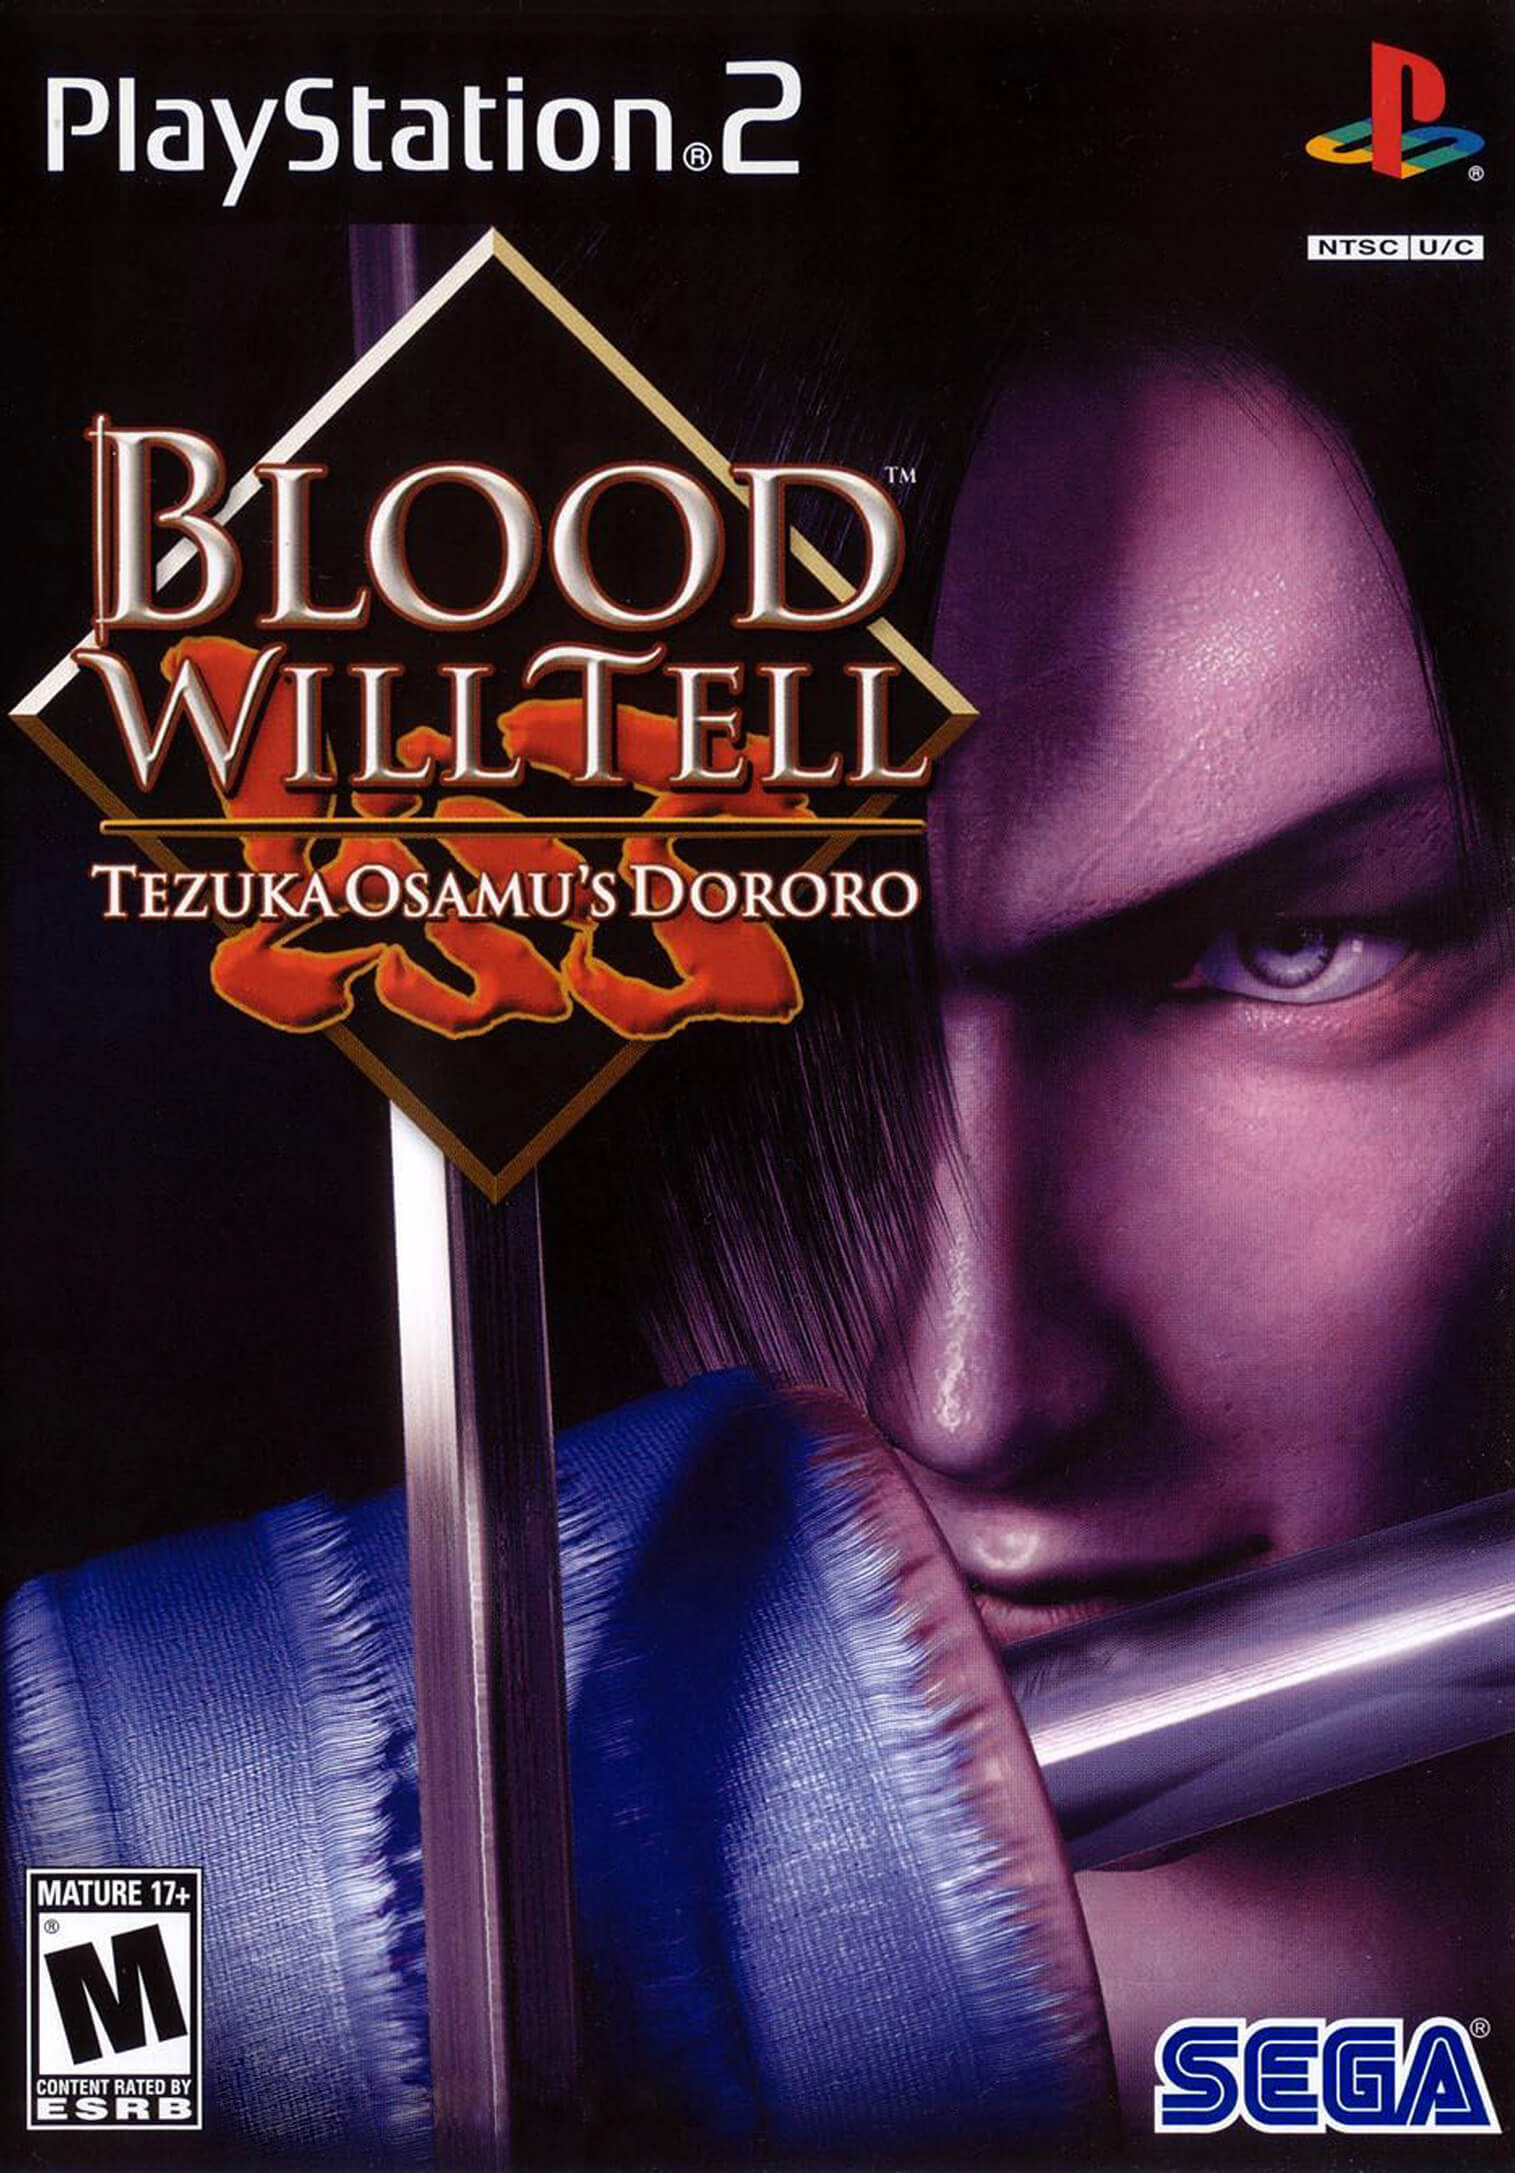 Blood Will Tell: Tezuka Osamu’s Dororo